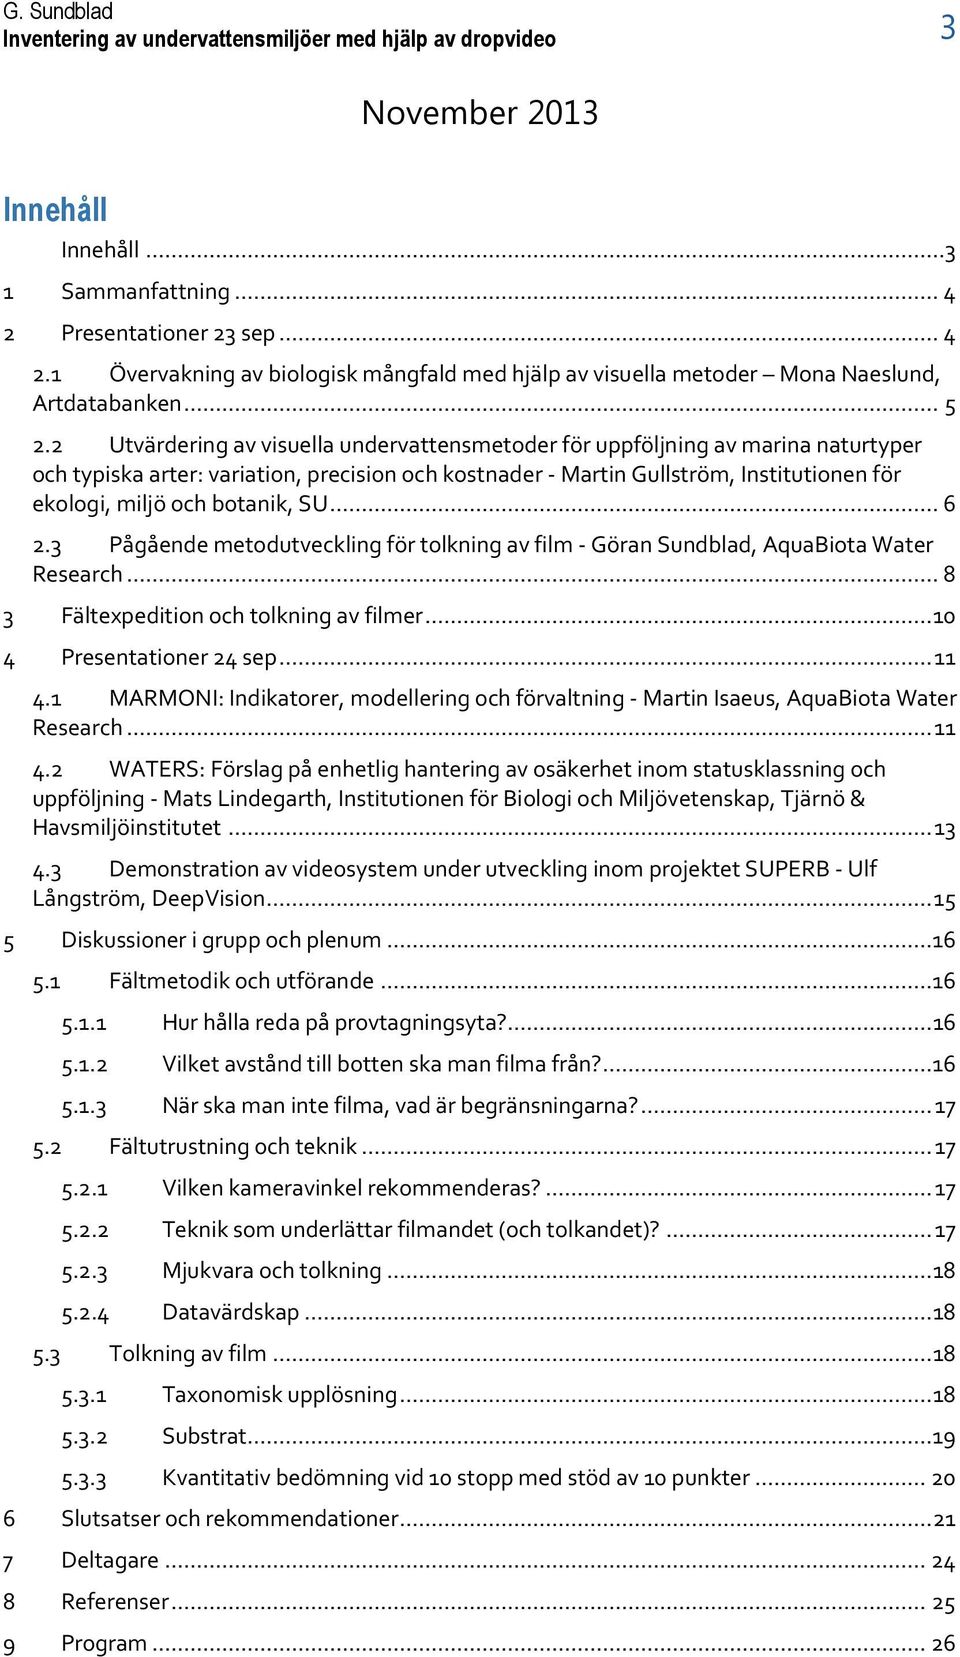 2 Utvärdering av visuella undervattensmetoder för uppföljning av marina naturtyper och typiska arter: variation, precision och kostnader - Martin Gullström, Institutionen för ekologi, miljö och